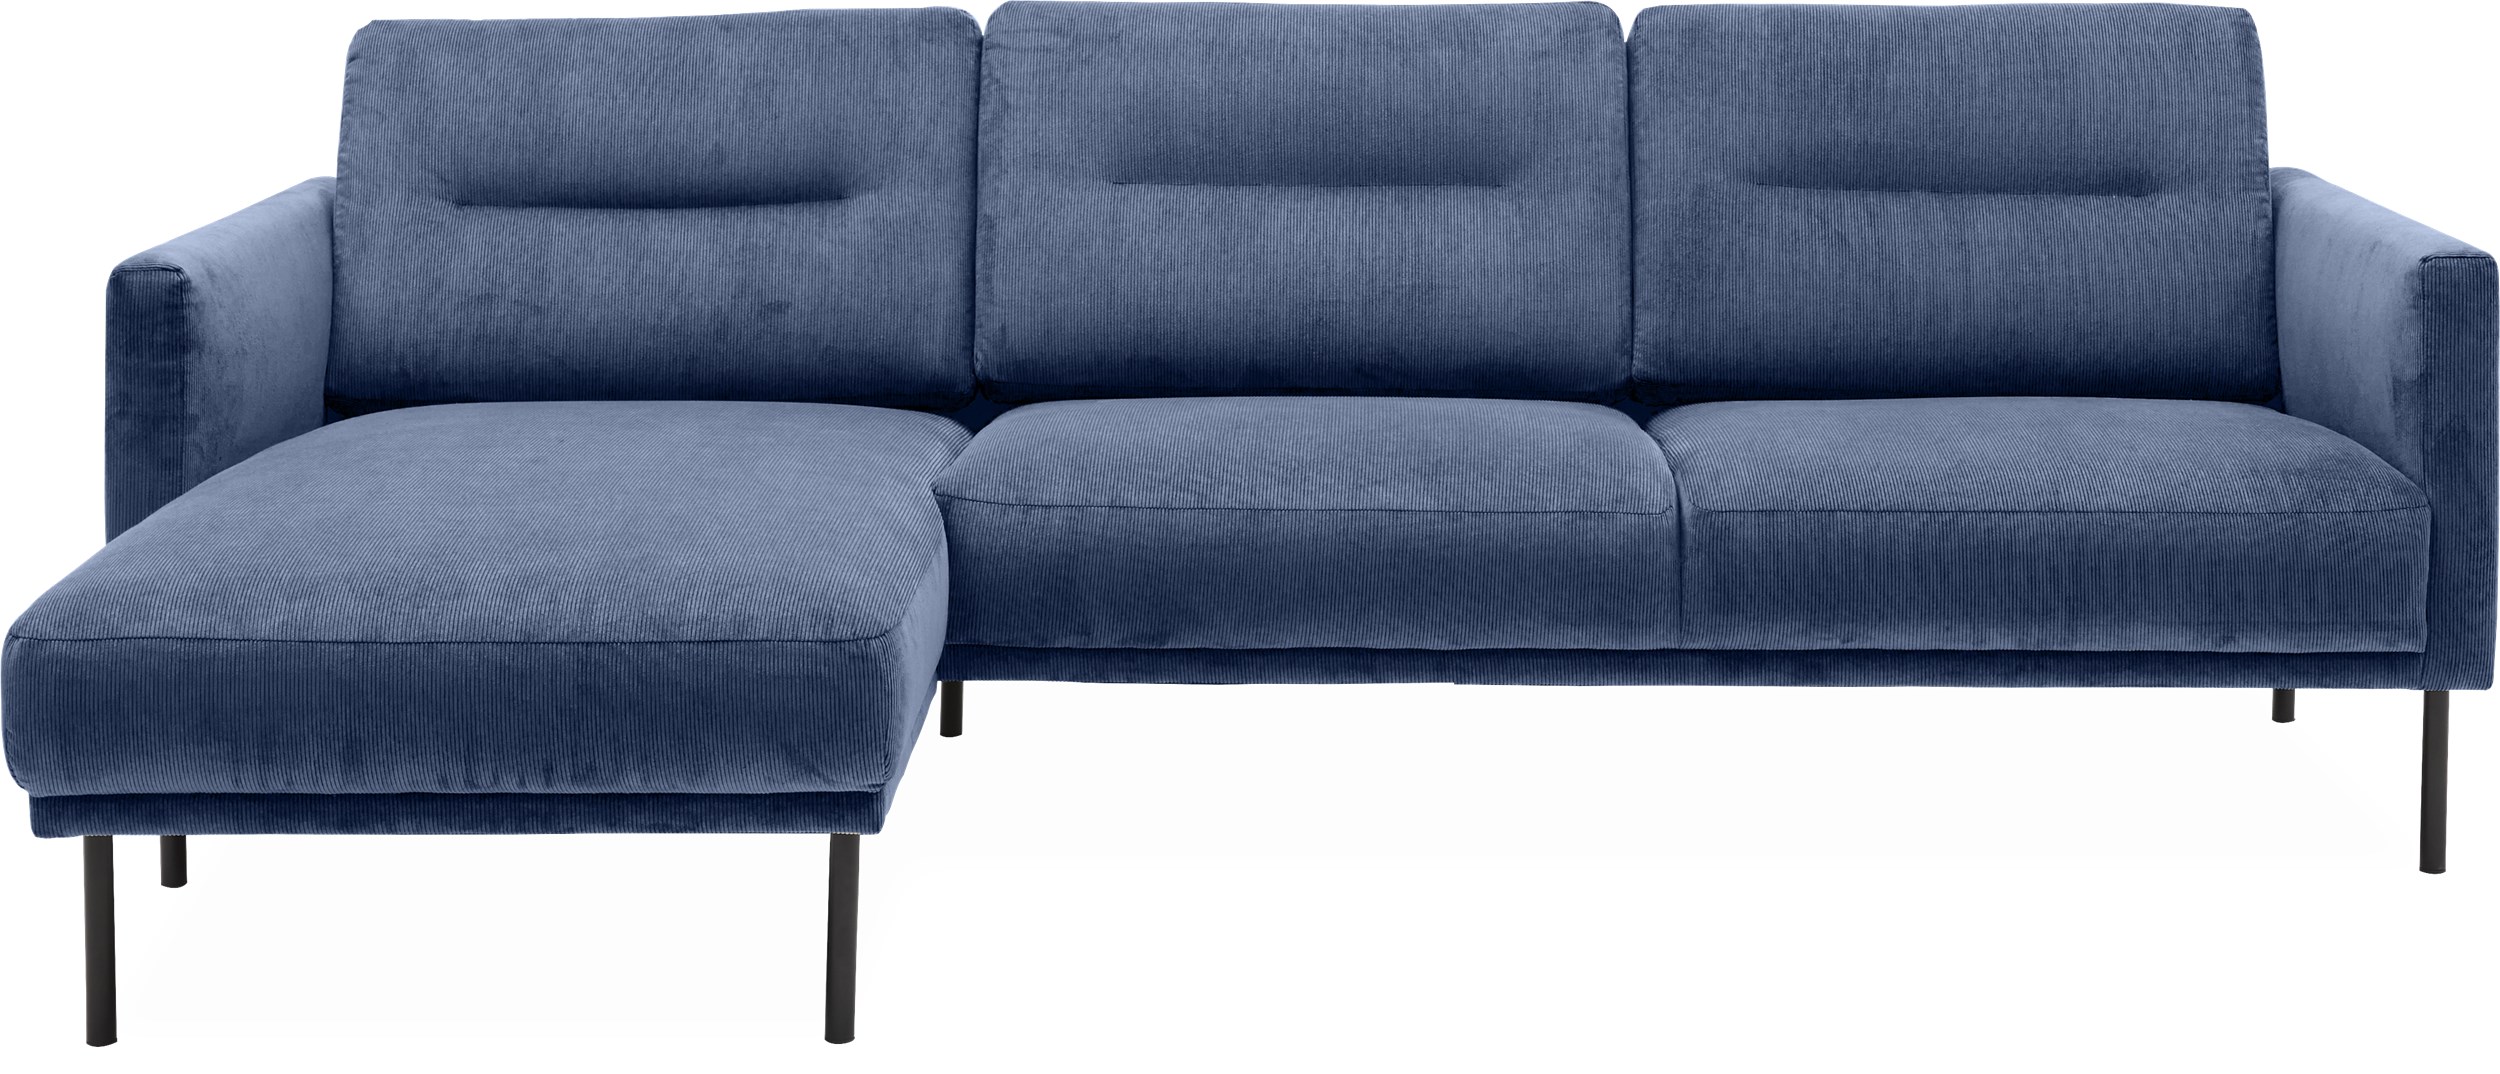 Larvik venstrevendt sofa med chaiselong - Wave 220 Royal blue stof og ben i sortlakeret metal